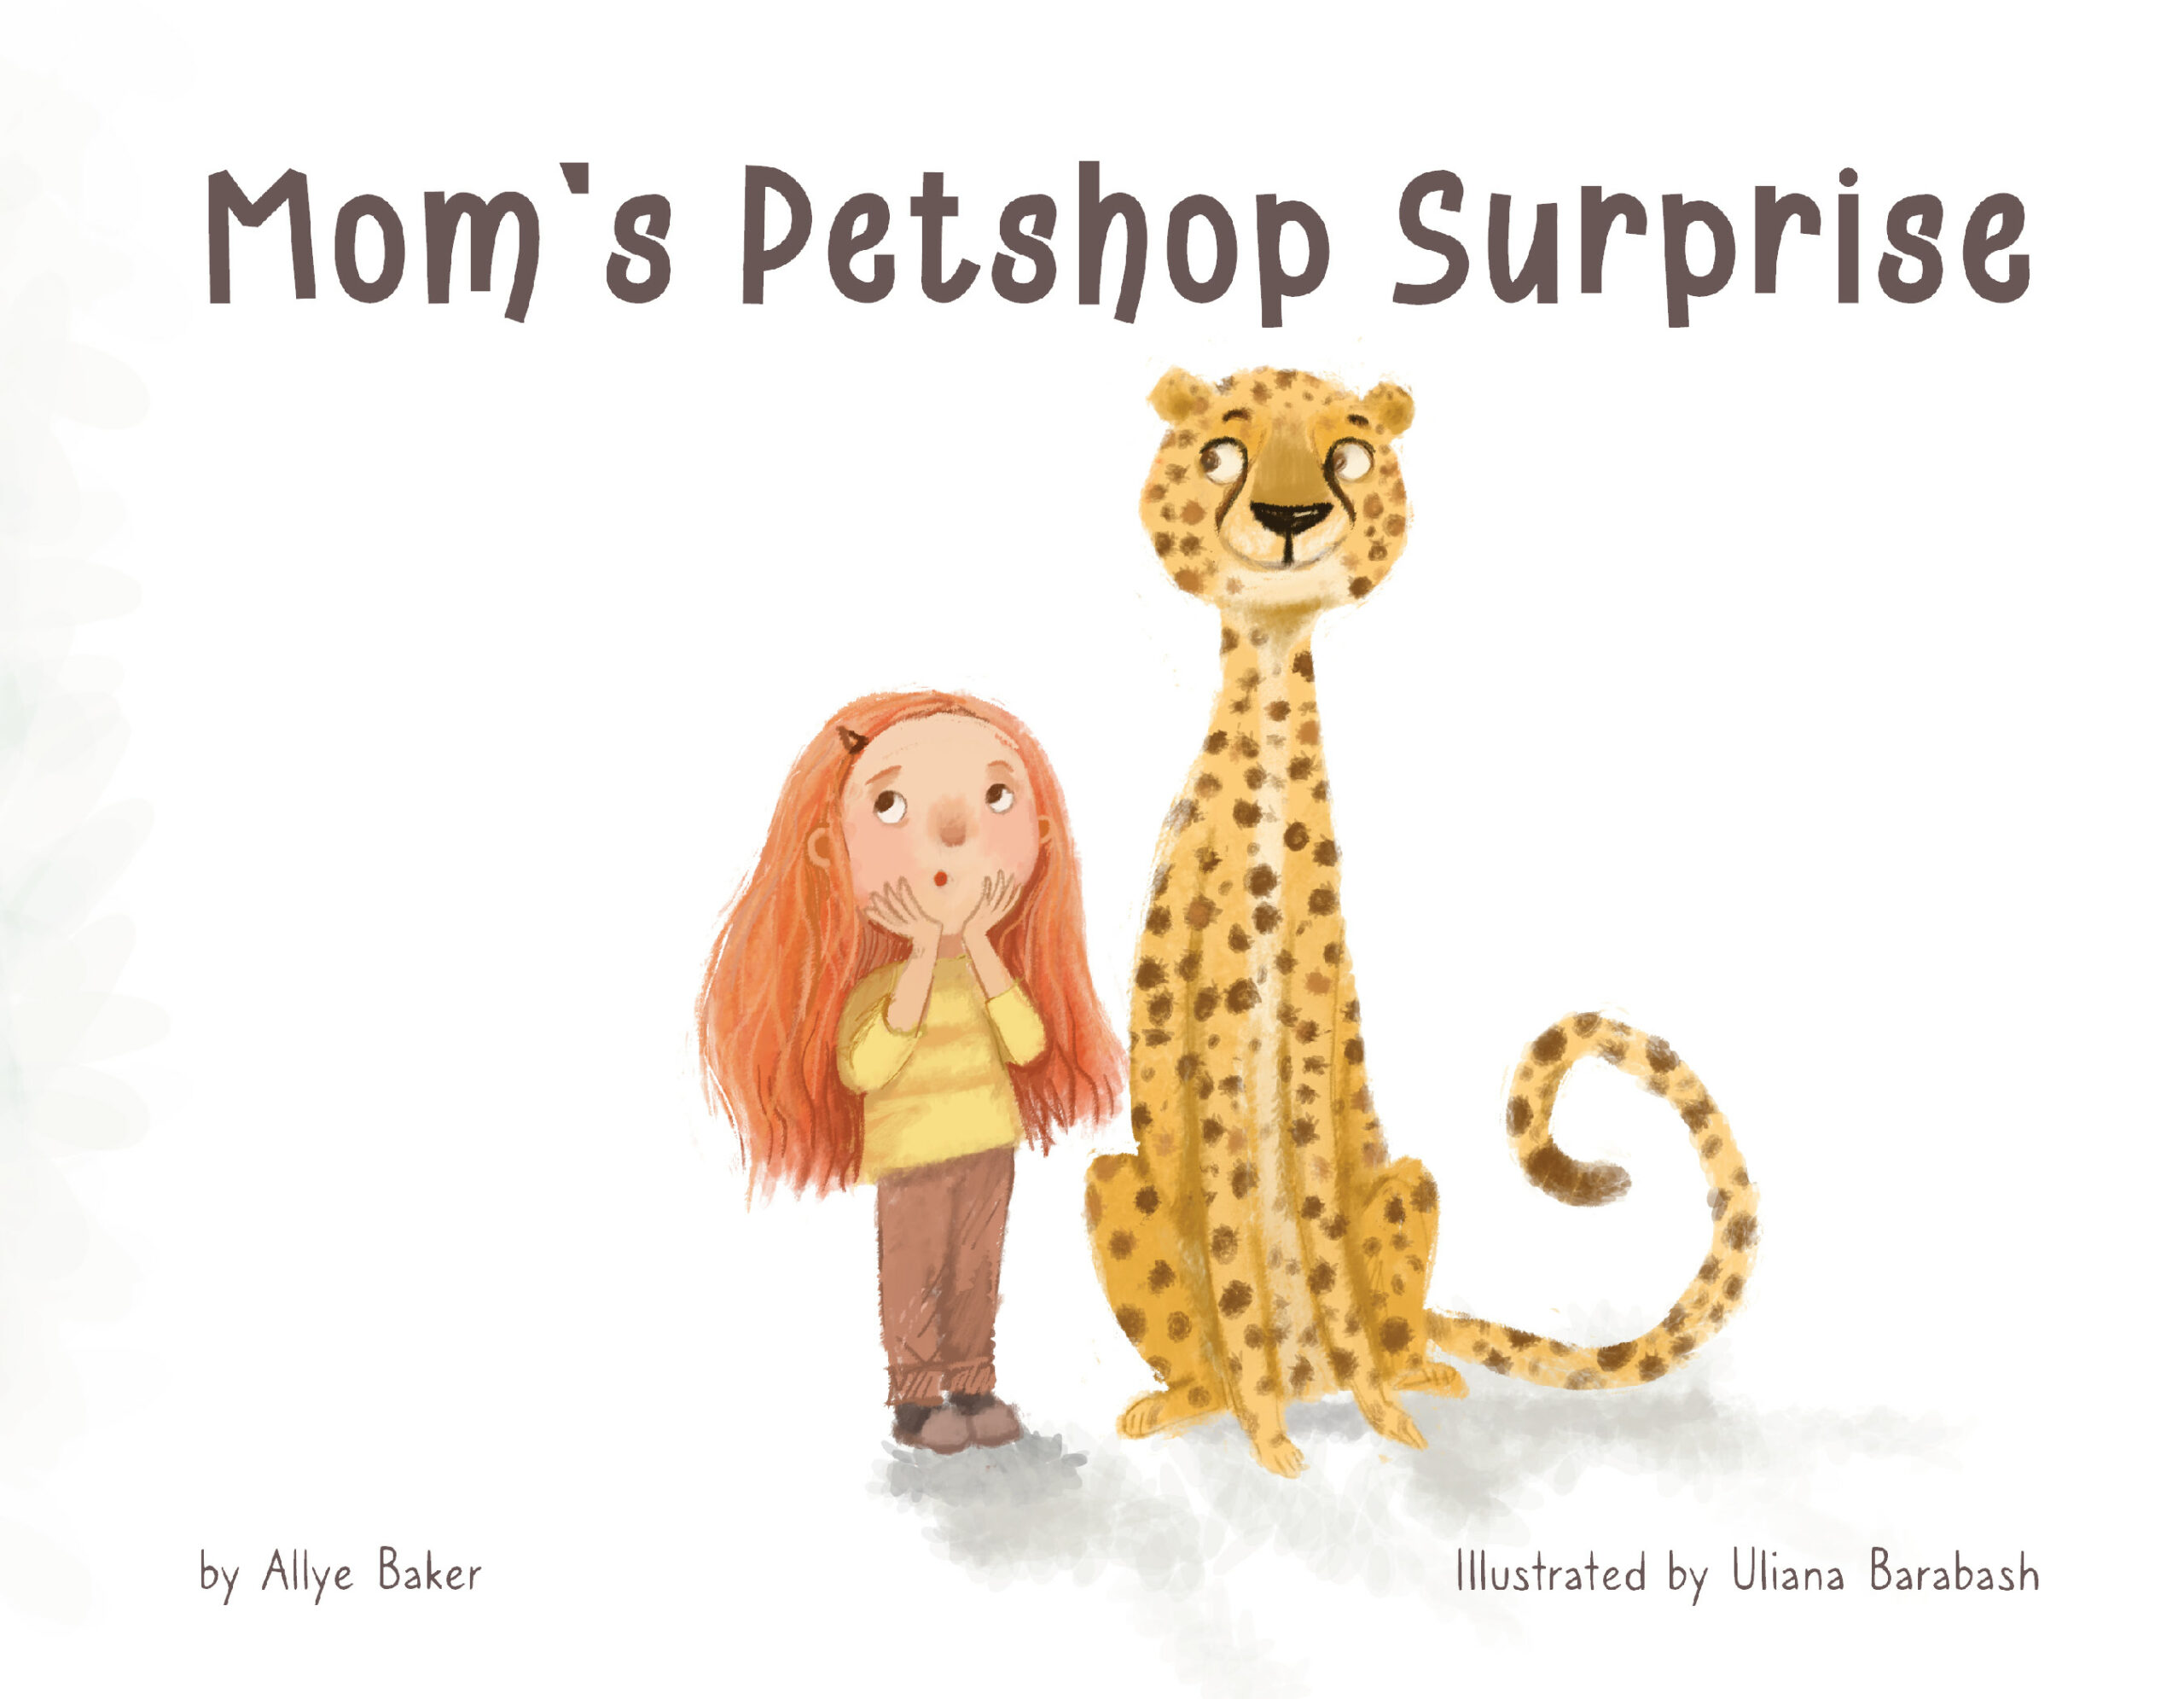 Mom’s Petshop Surprise